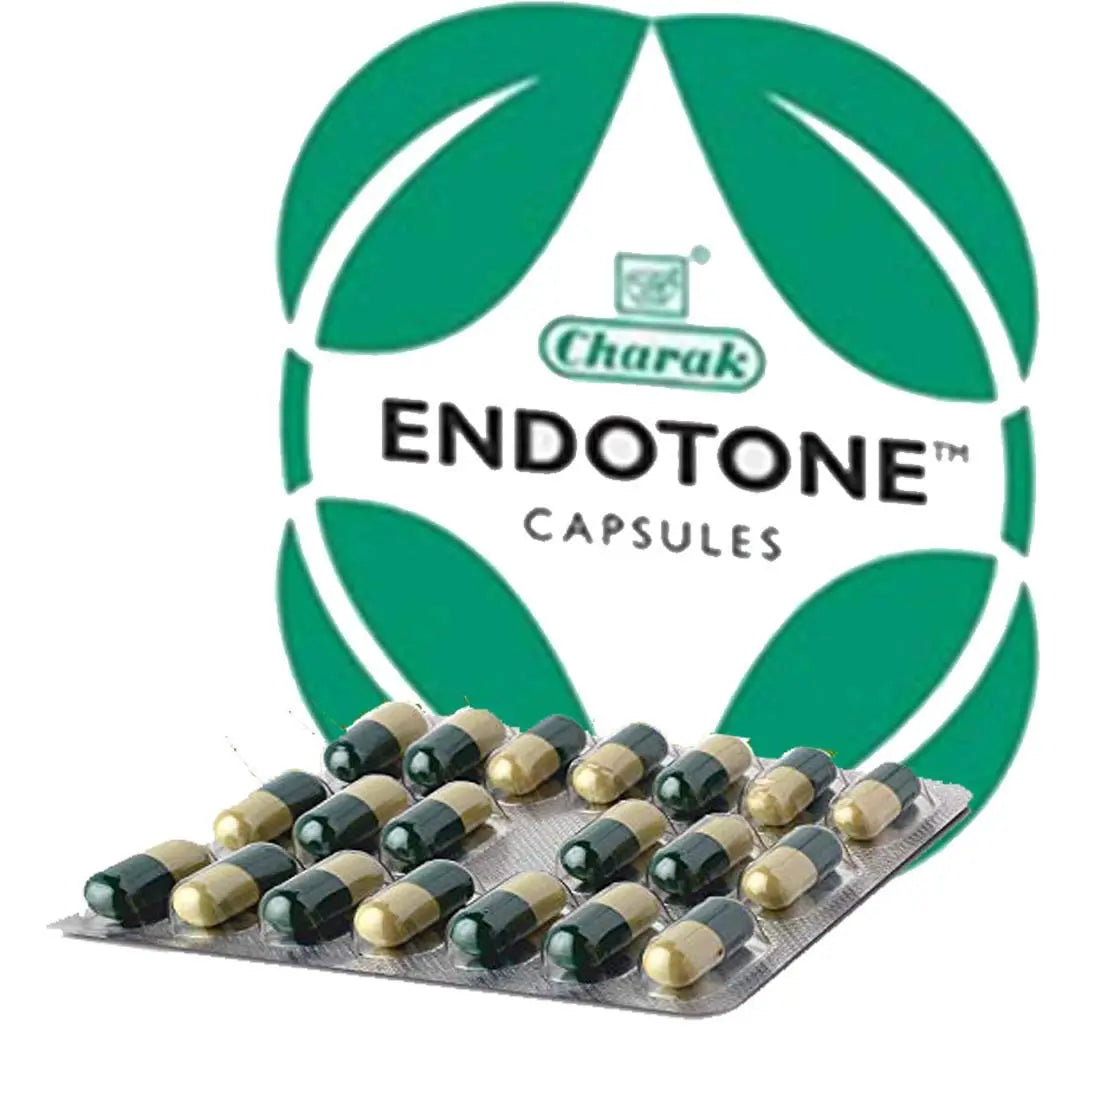 Endotone Capsules - 20Capsules Charak